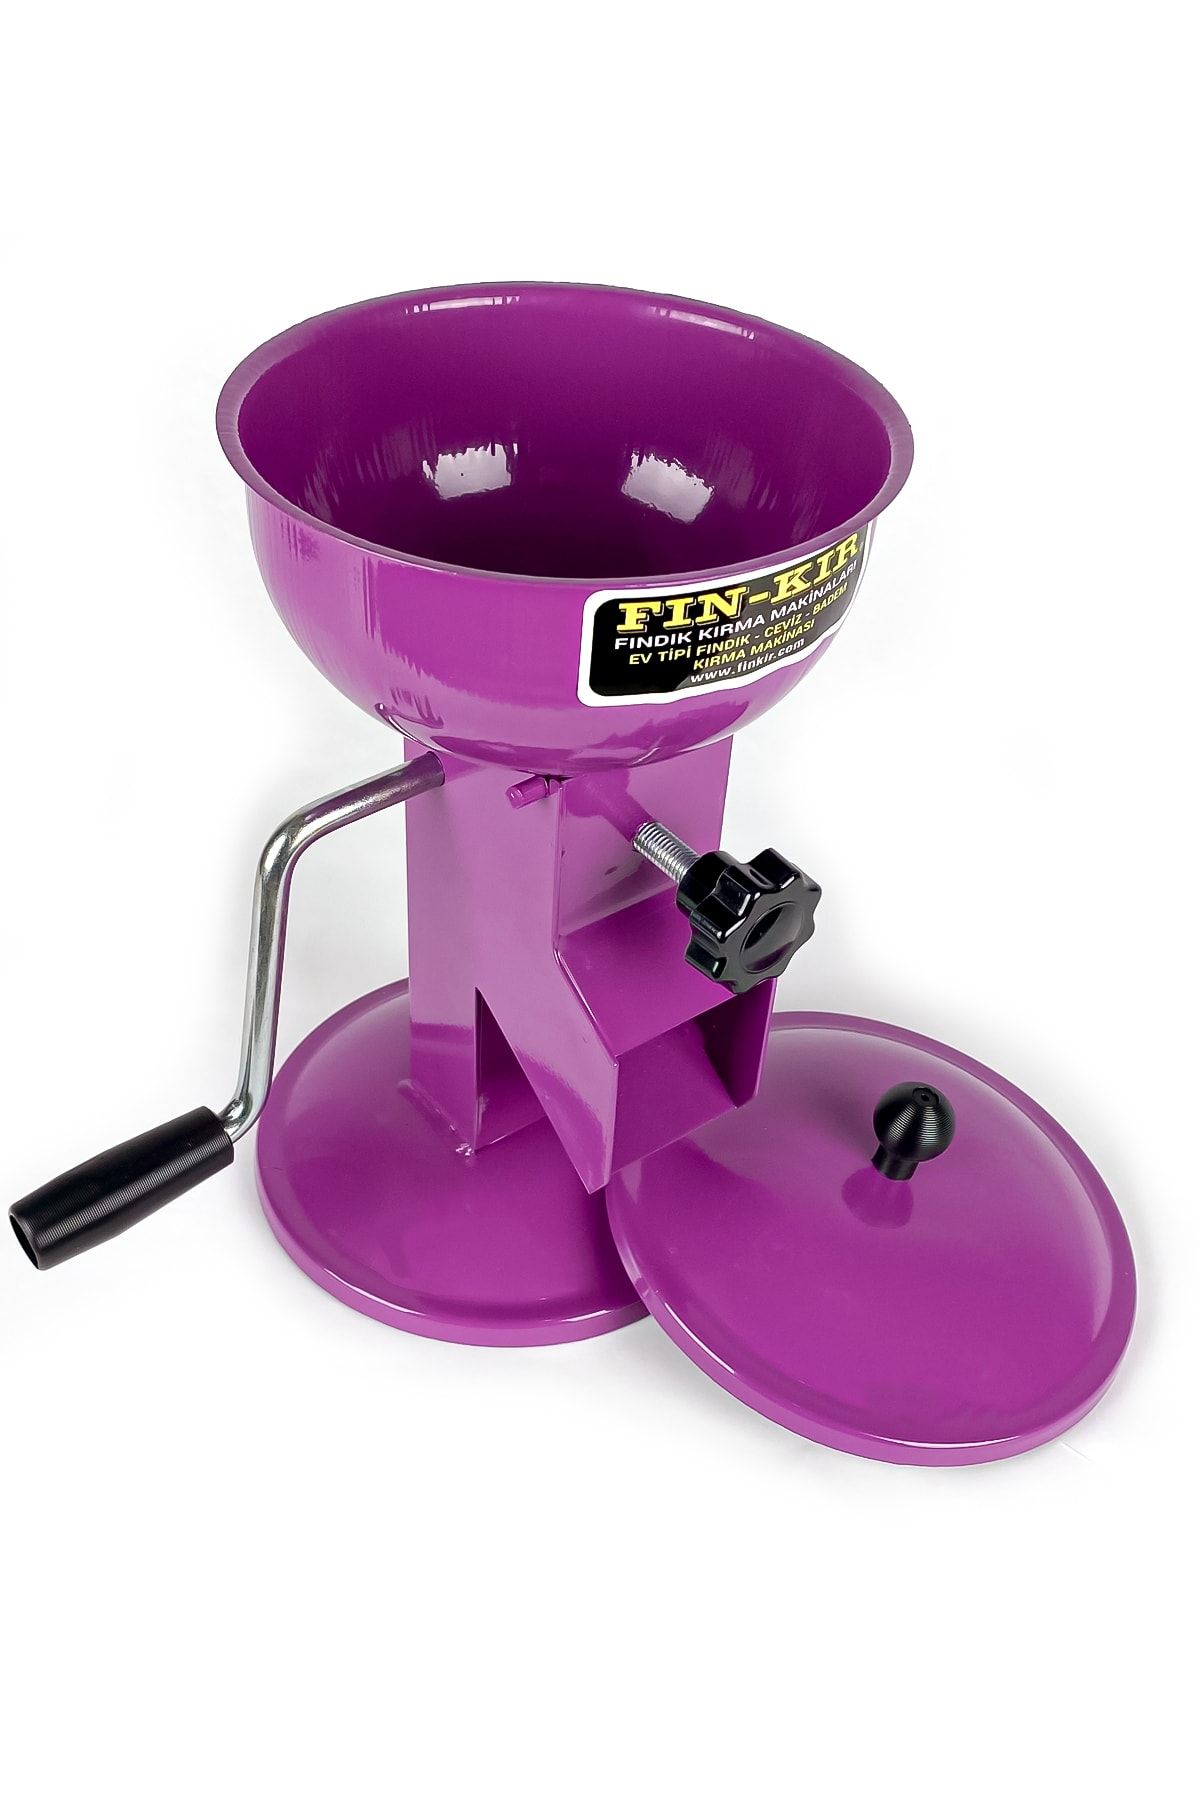 Genel Markalar Mor Renk Mutfak Tipi Fındık Ceviz Badem Kırma Makinesi Fındık Kıracağı